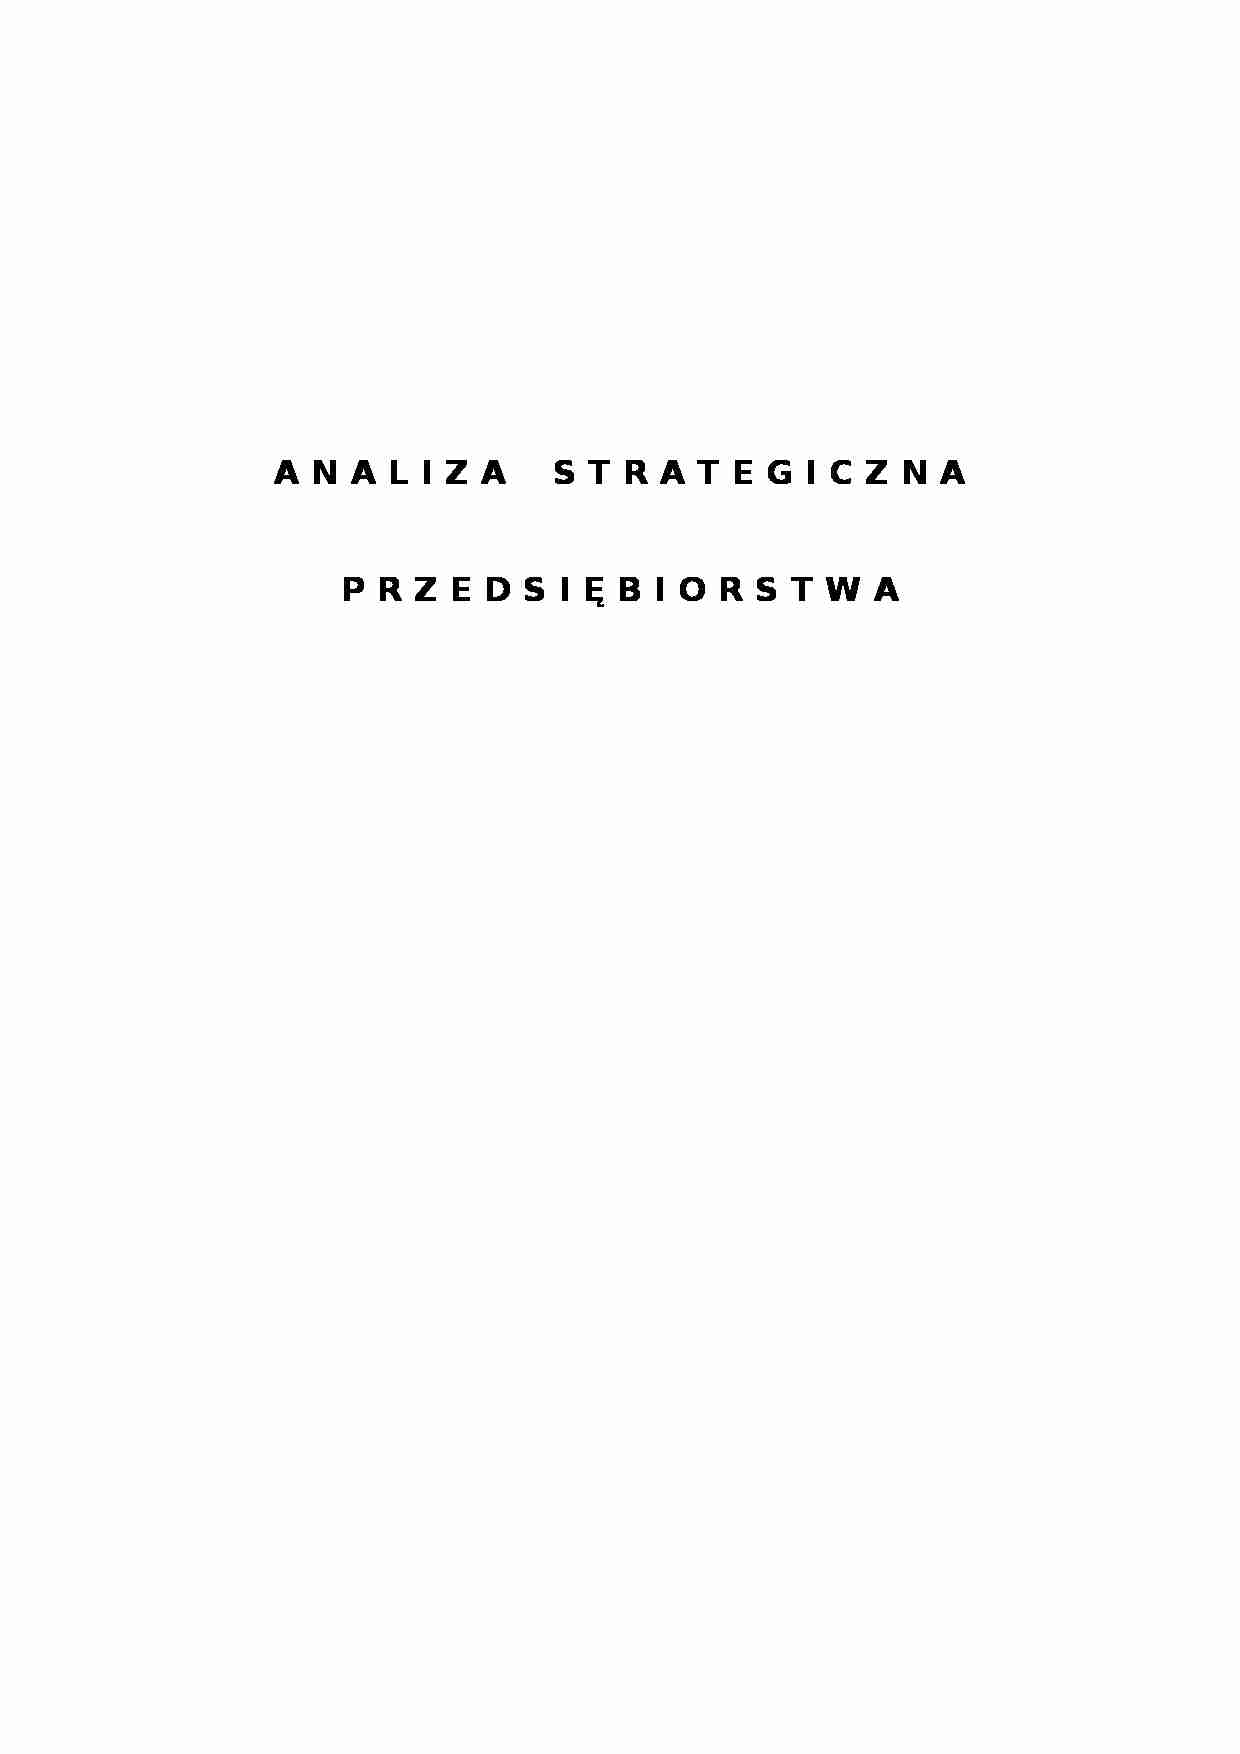 Analiza strategiczna przedsiębiorstwa - zarządzanie - strona 1